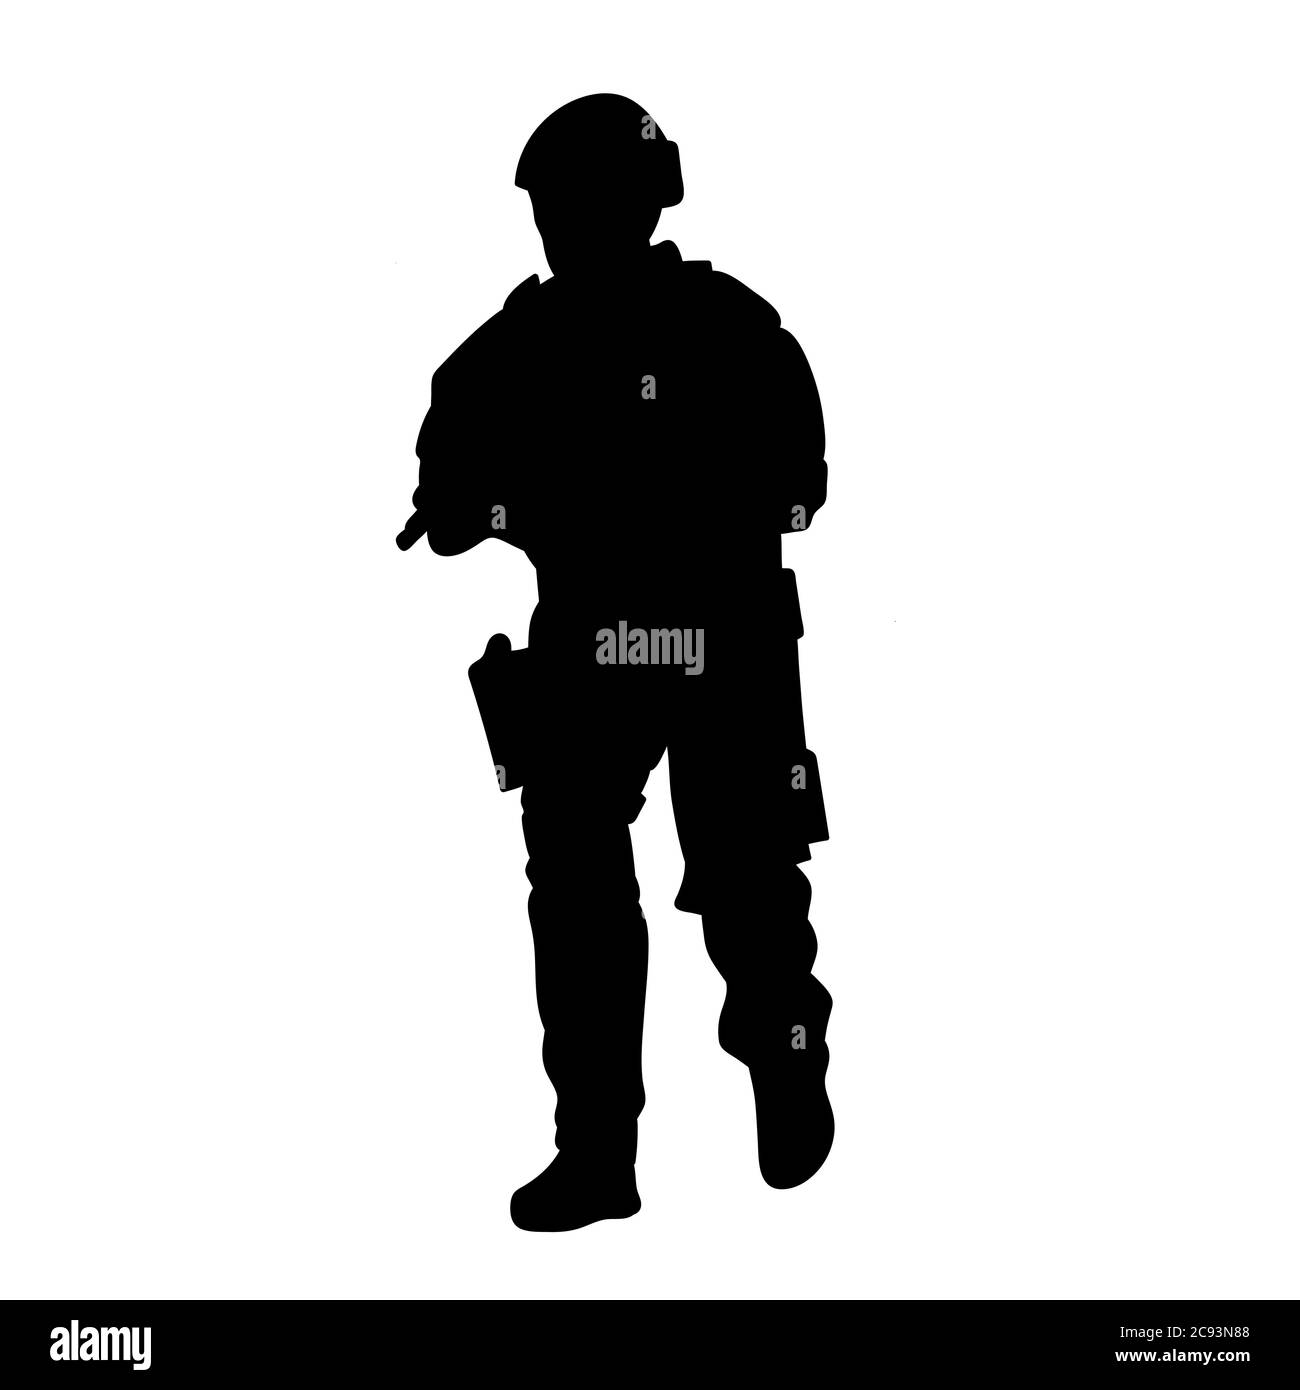 Soldier in uniform is walking, silhouette vector Stock Vector